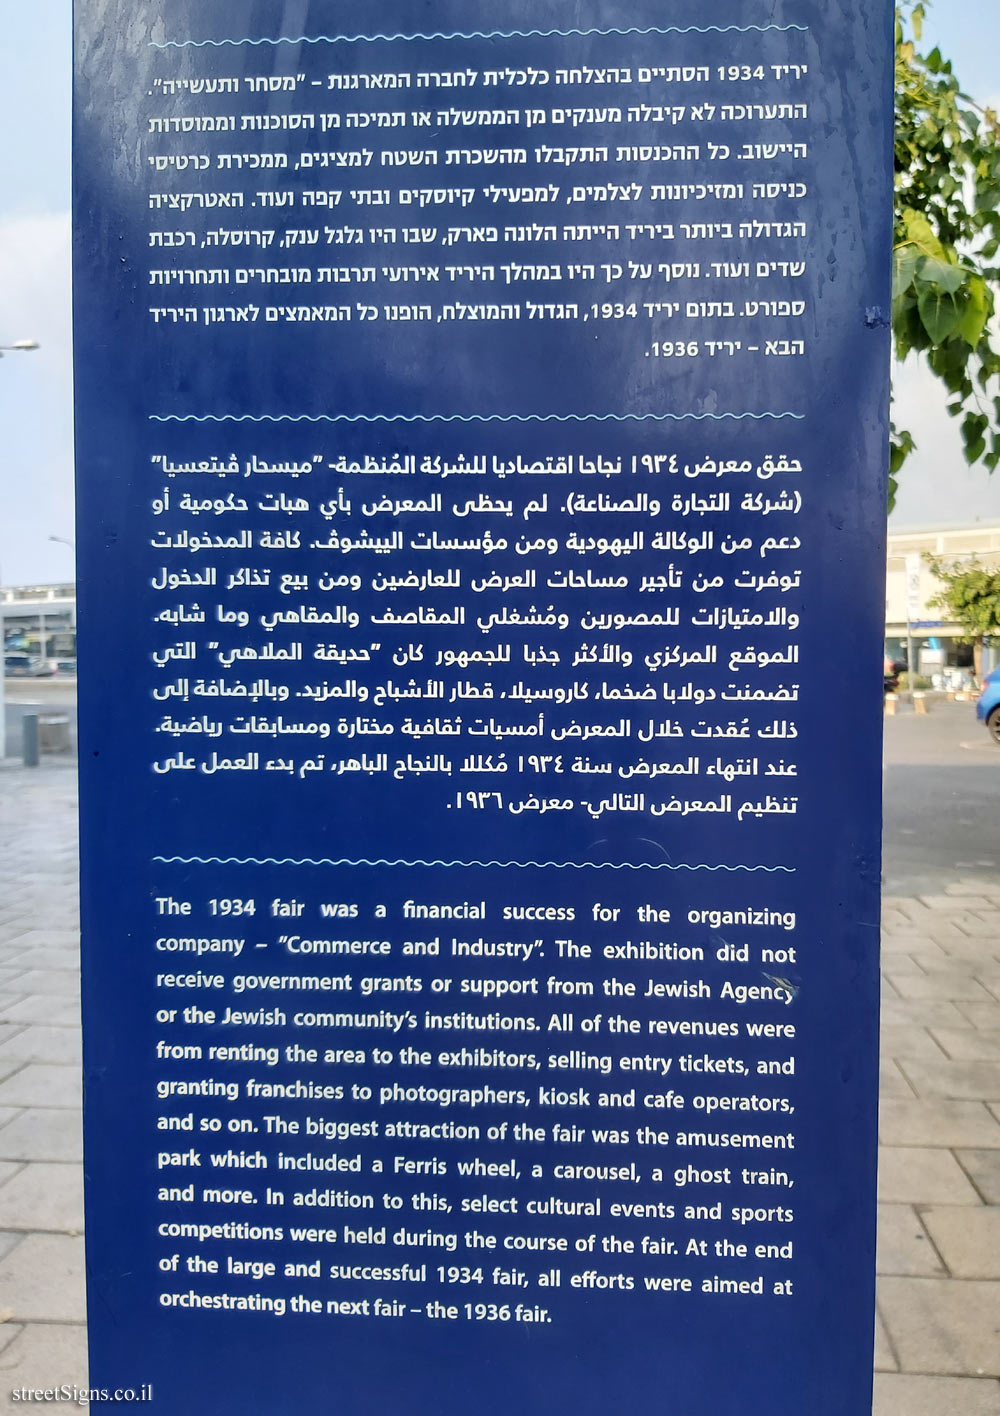 Tel Aviv - Levant Fair - Levant Fair Summary